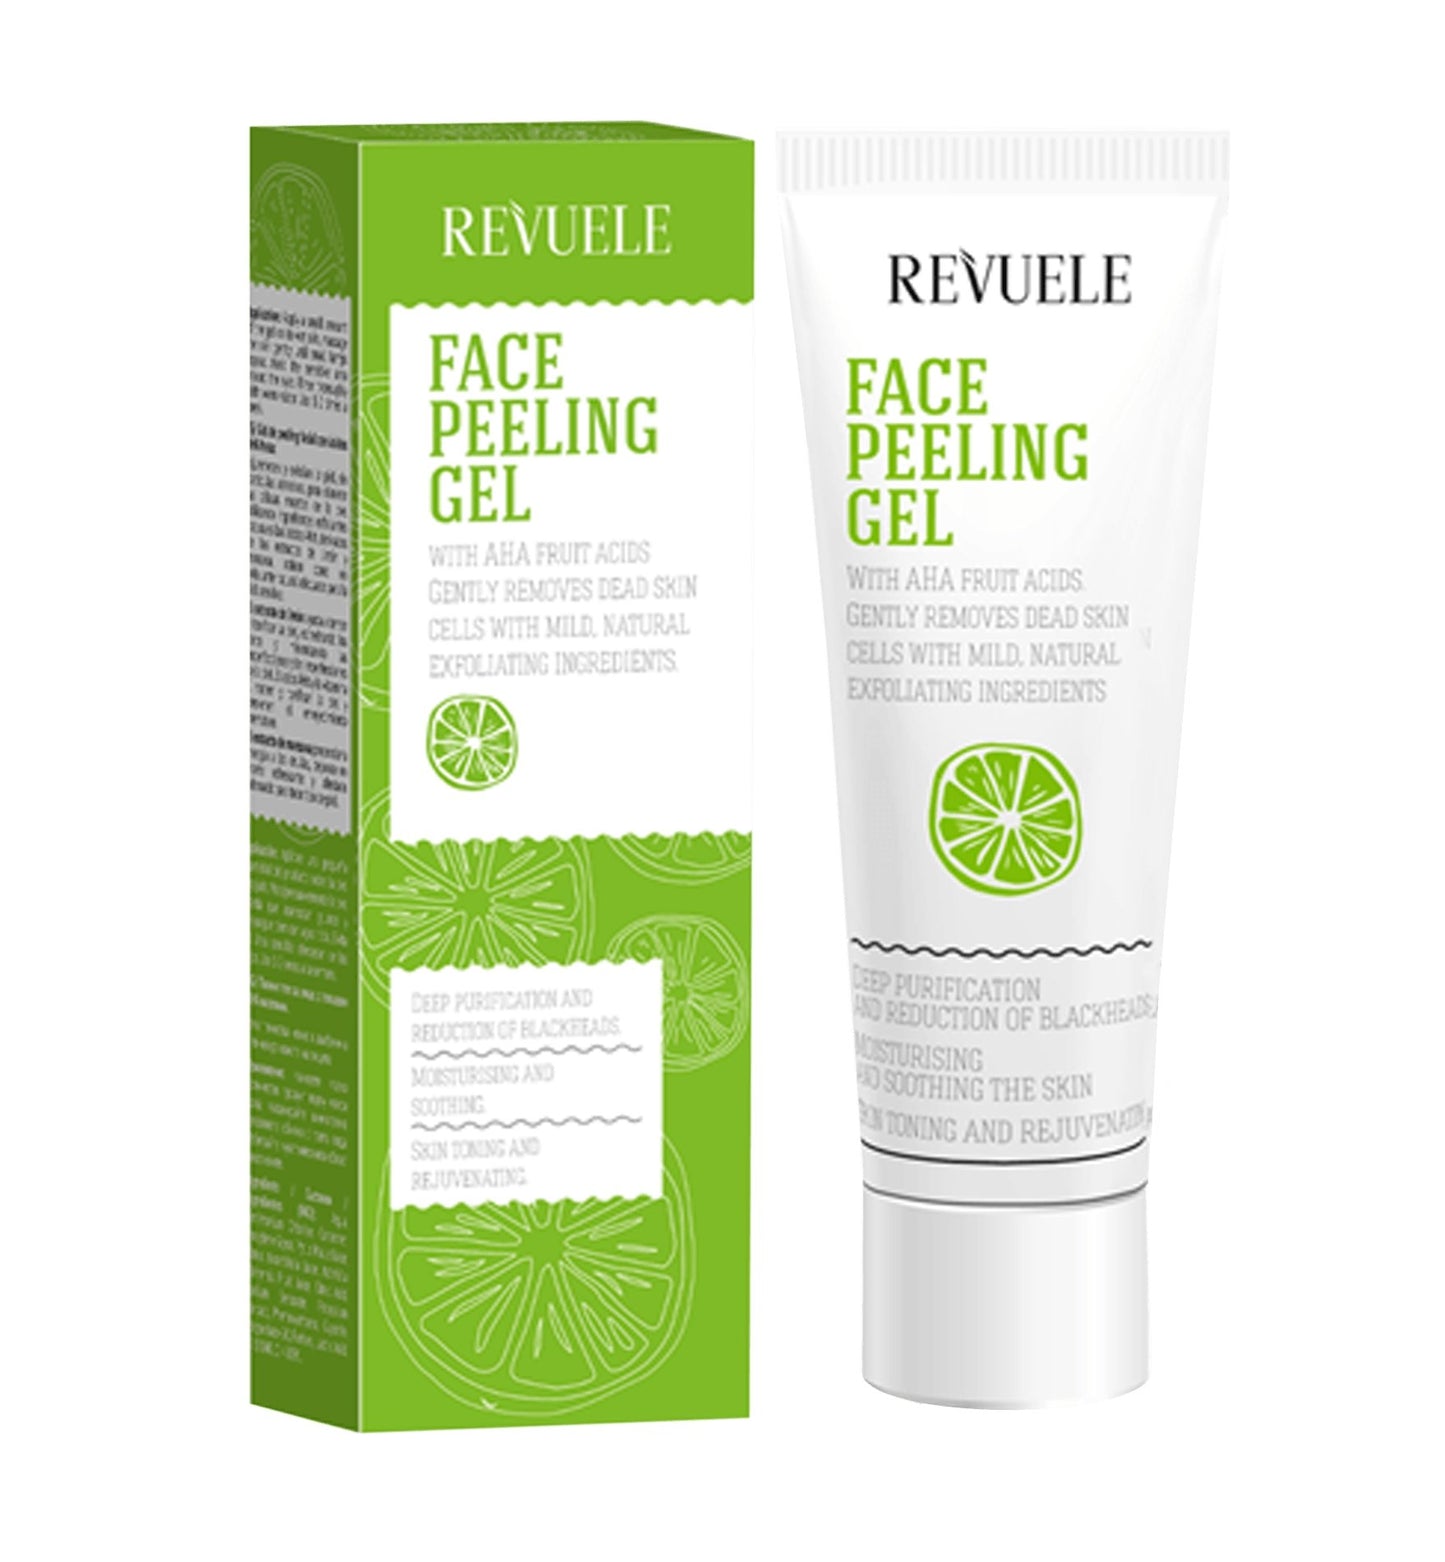 Revuele Face Peeling Gel with AHA Fruit Acids - Ome's Beauty Mart